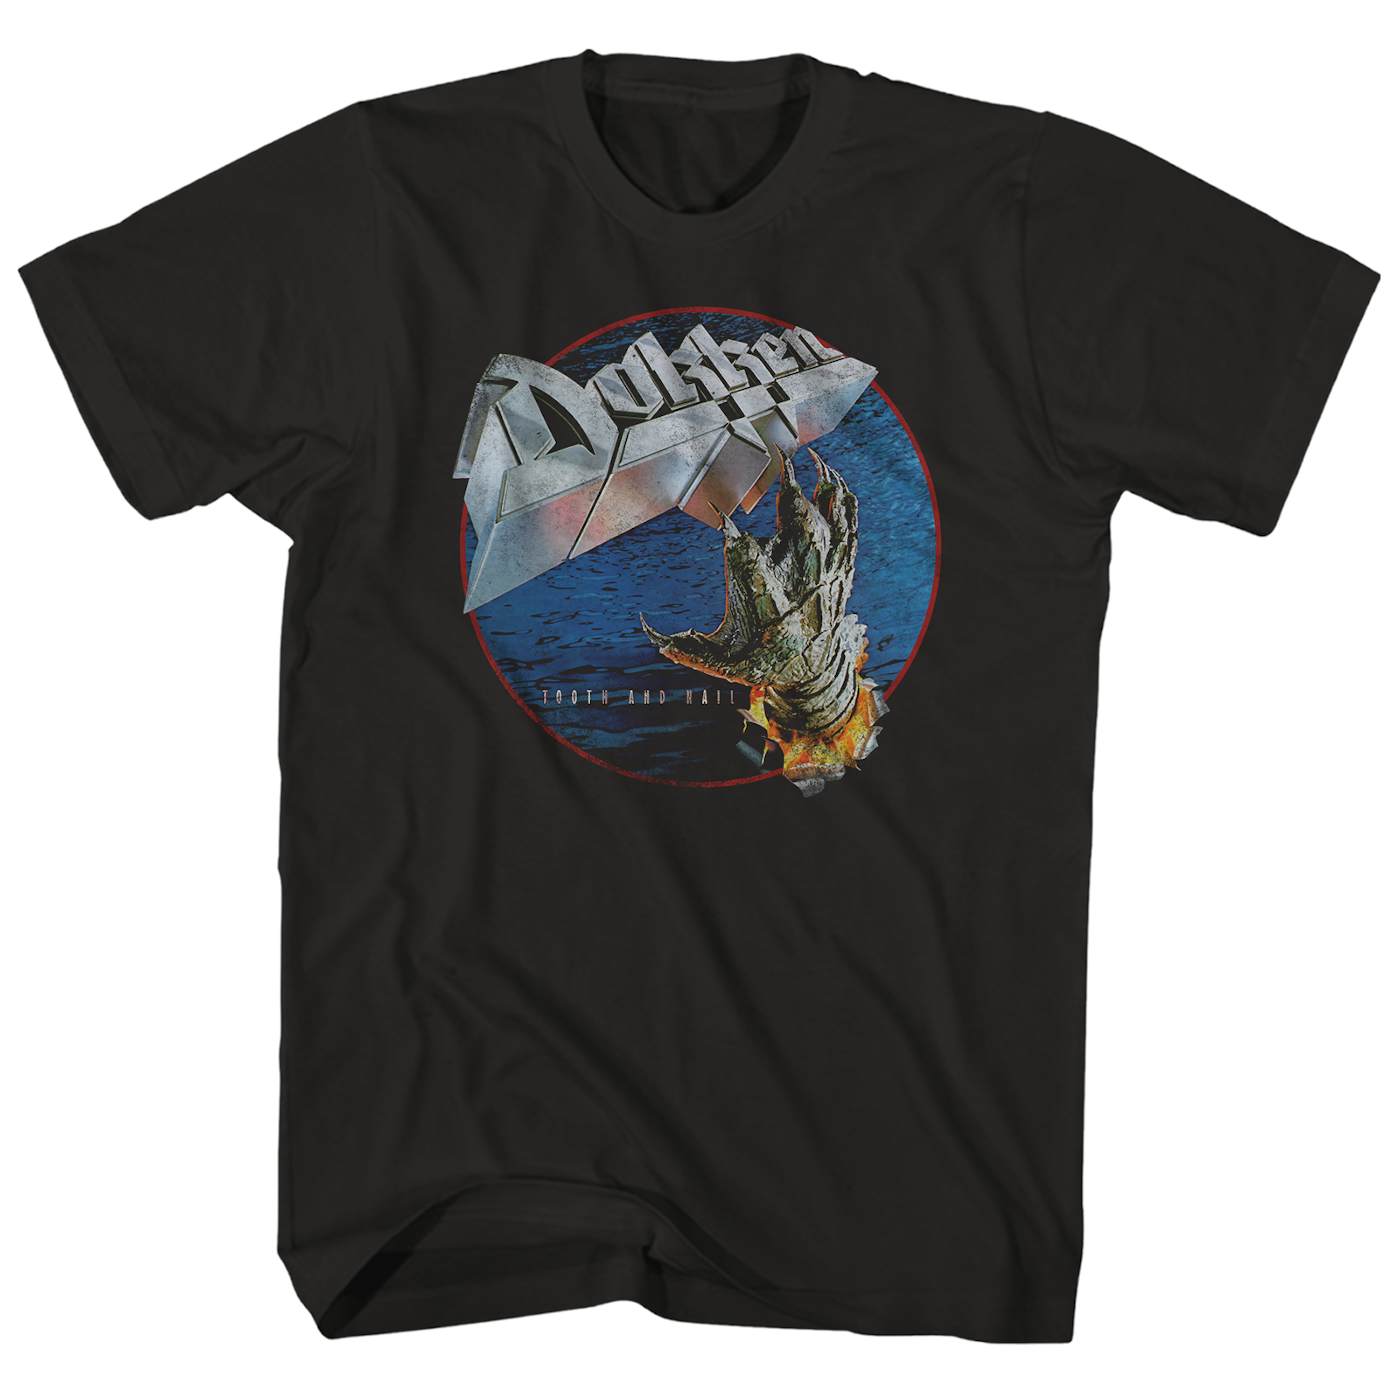 KIX COOL KIDS 1983 - Best Rock T-shirts